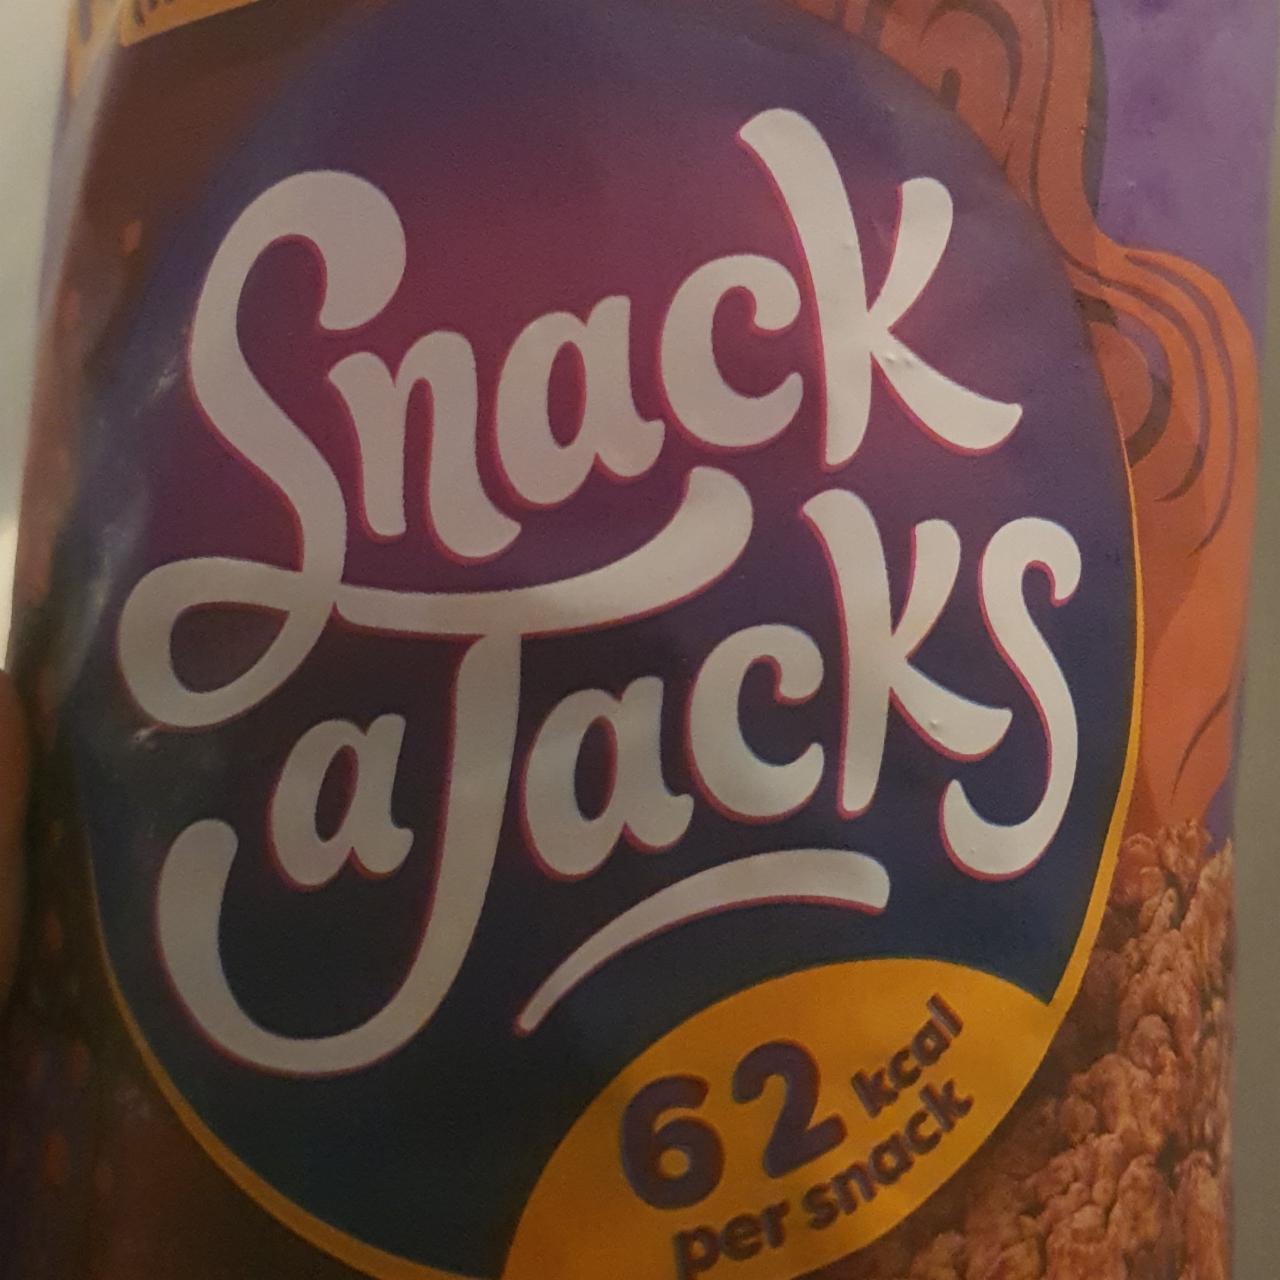 Фото - рисовые хлебцы с шоколдом Snack a Jack's